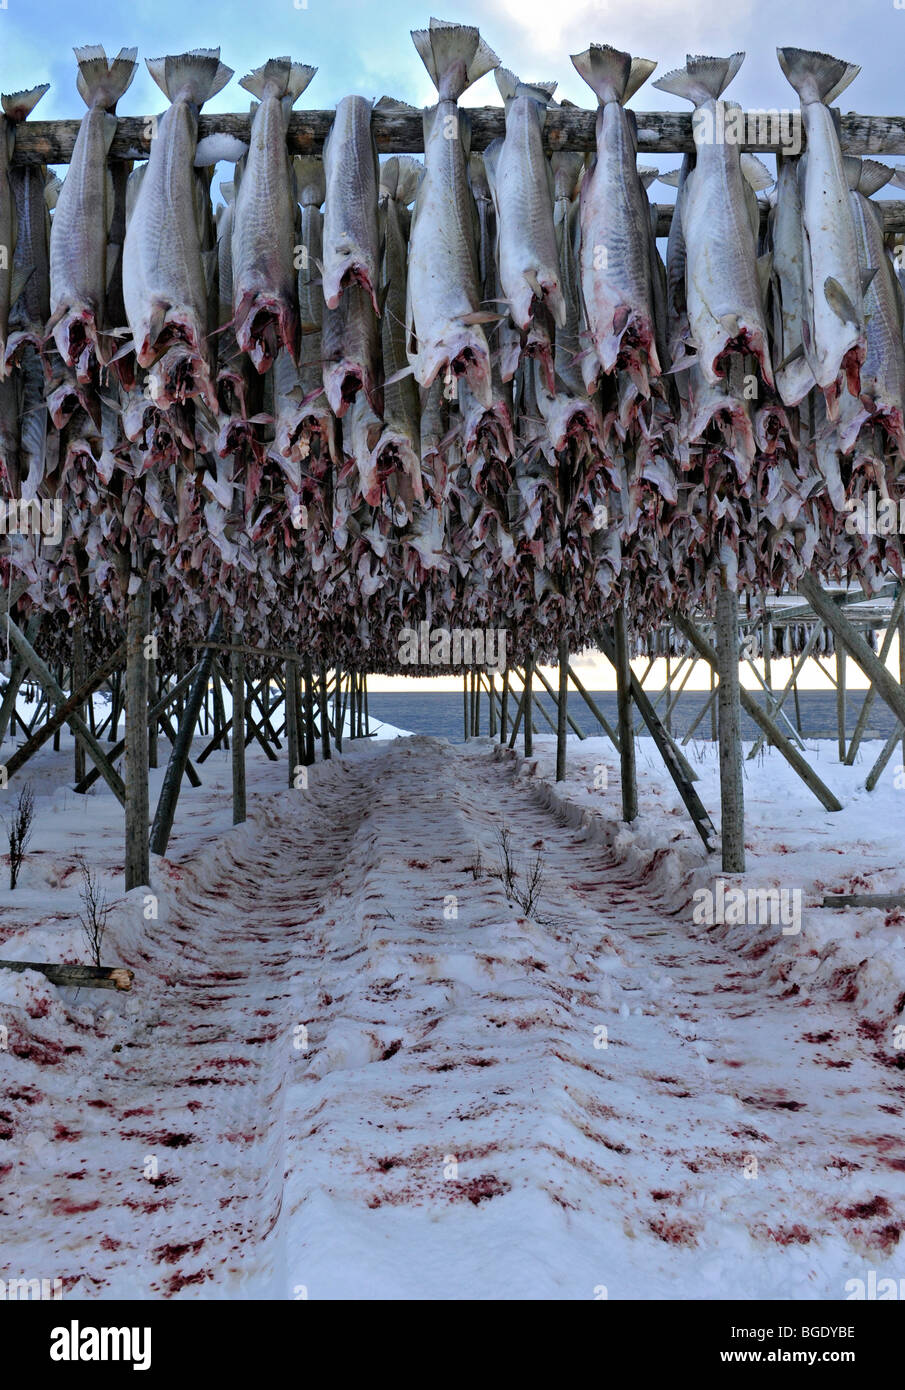 COD hängen zum Trocknen auf eine Zahnstange, Angeln. Fisch-Blut in den Schnee unter. Stockfoto